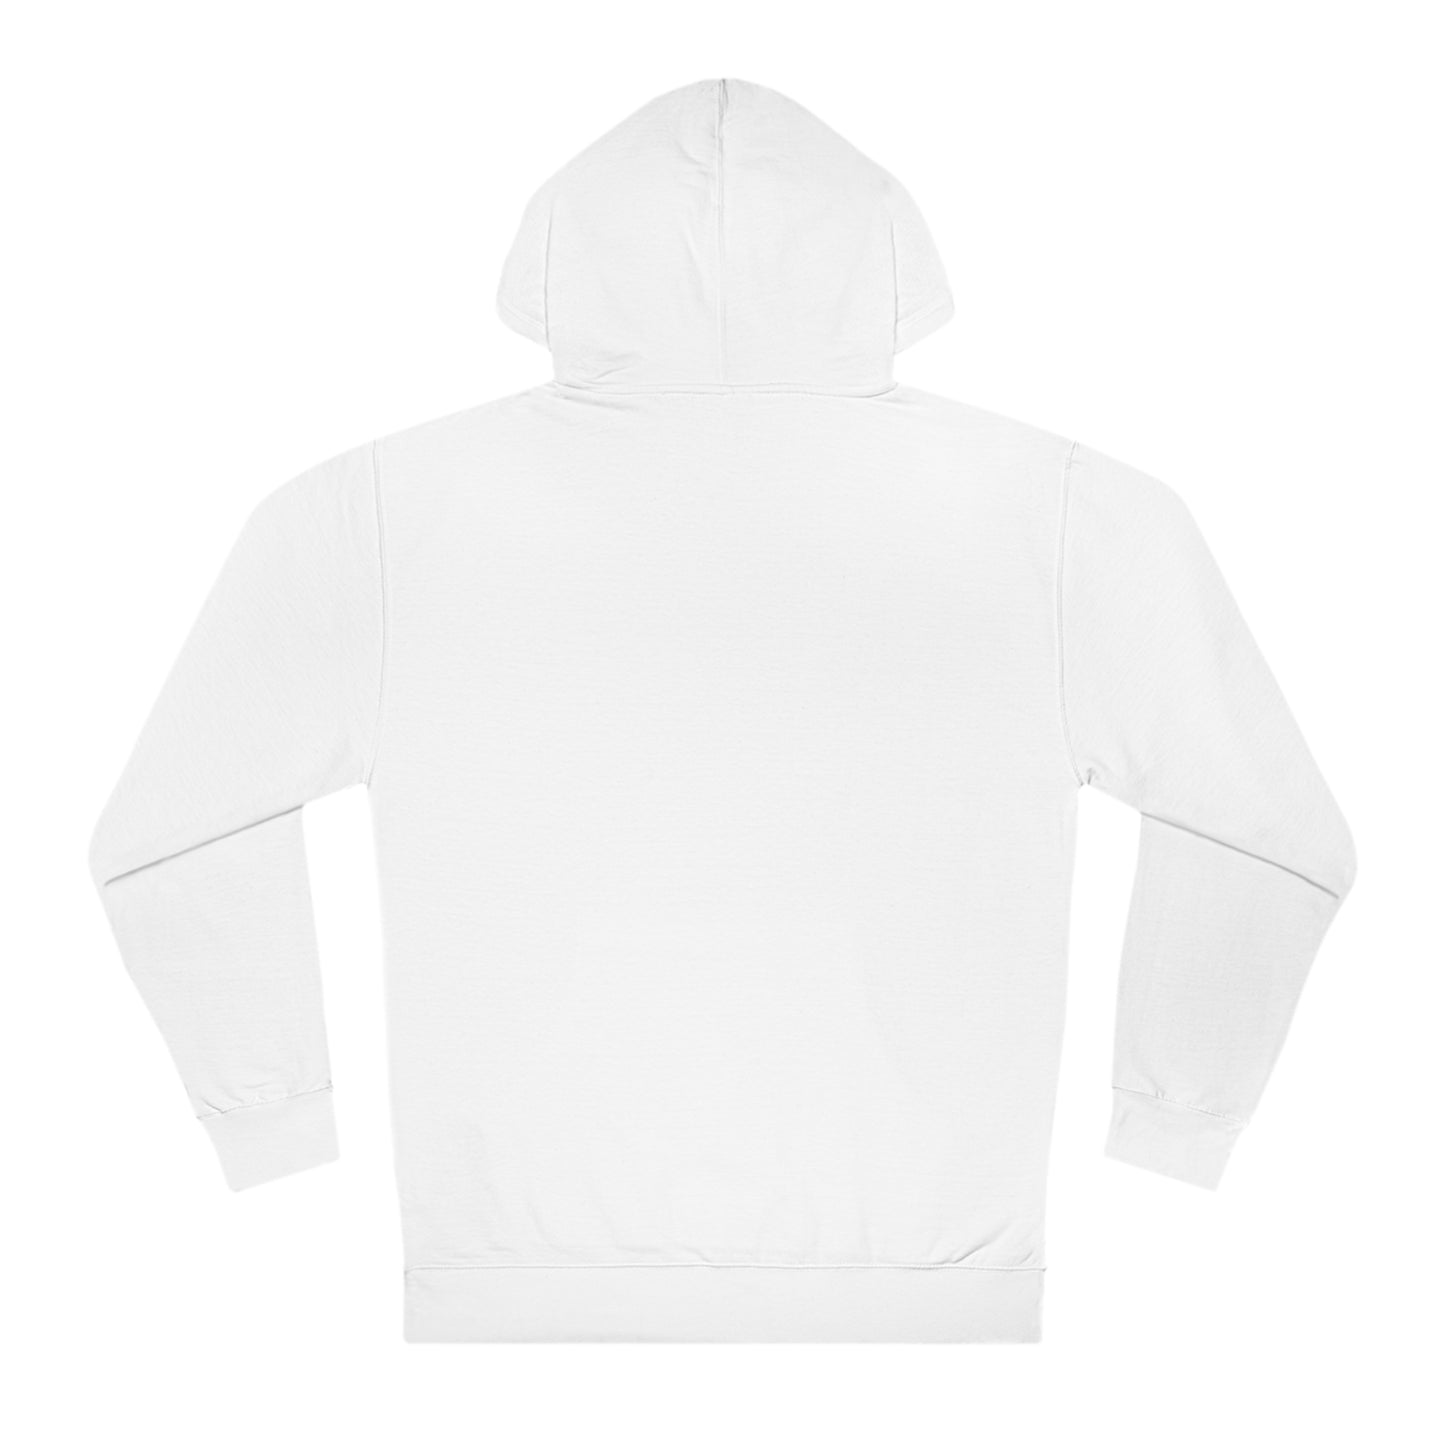 Unisex hooded sweatshirt hoodie in white